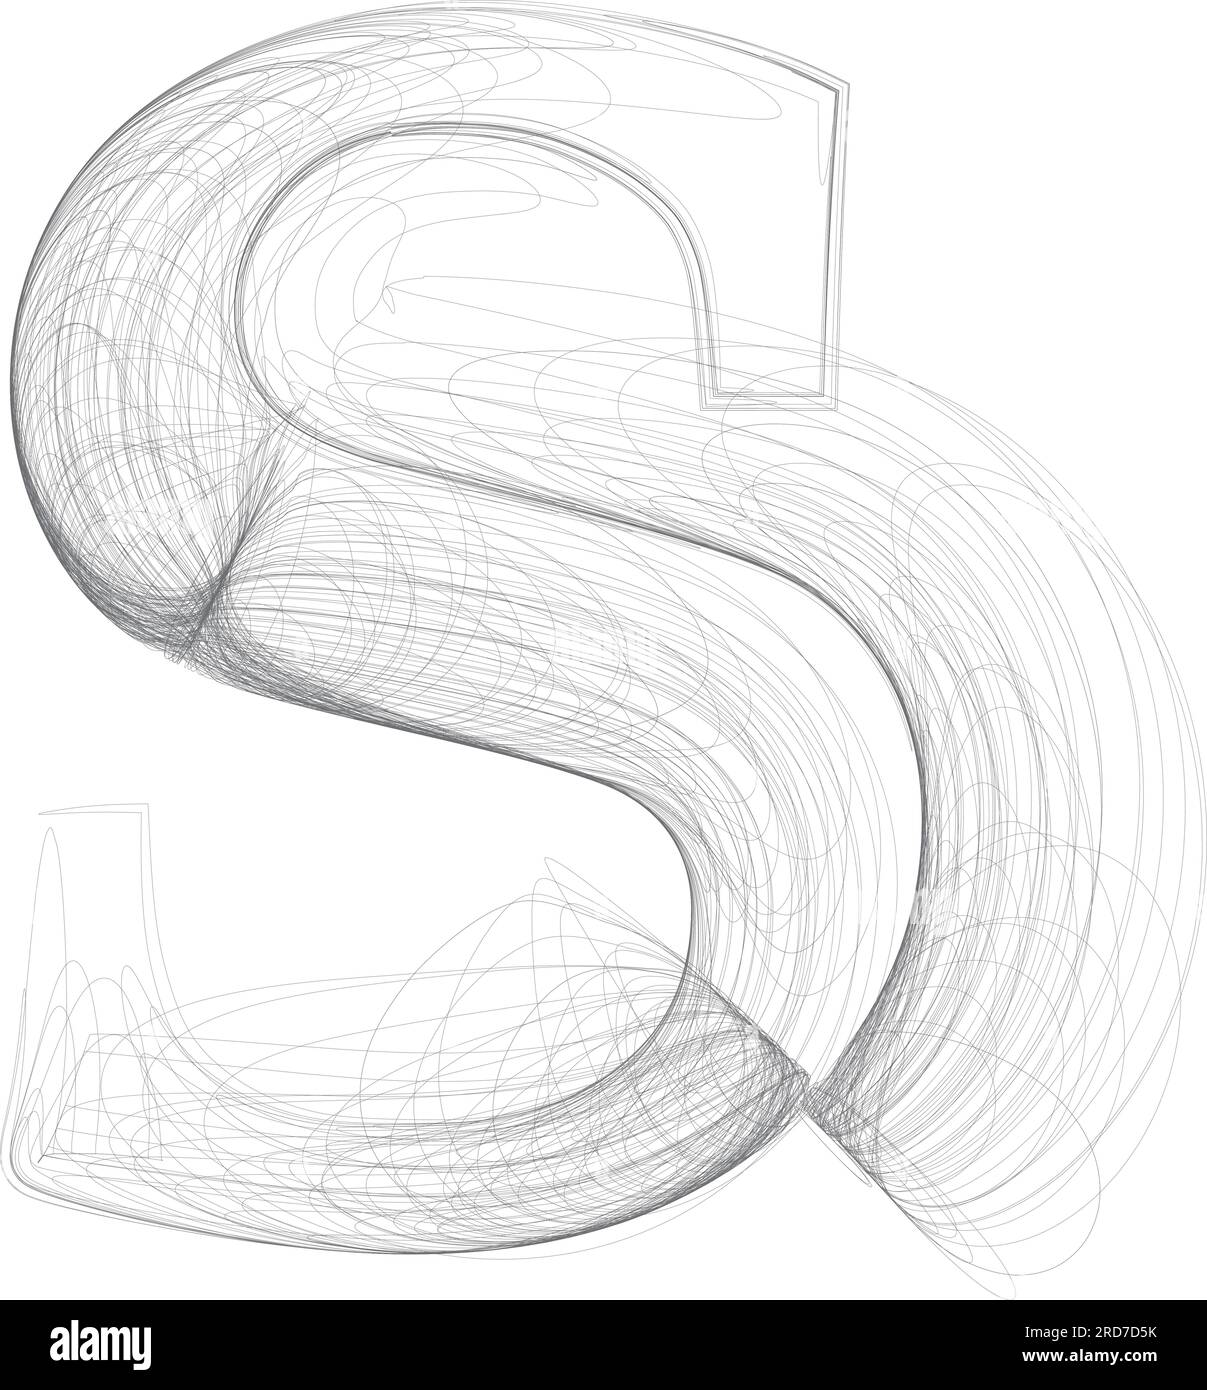 Alphabet S illustrate illustration sketch sketches   Flickr